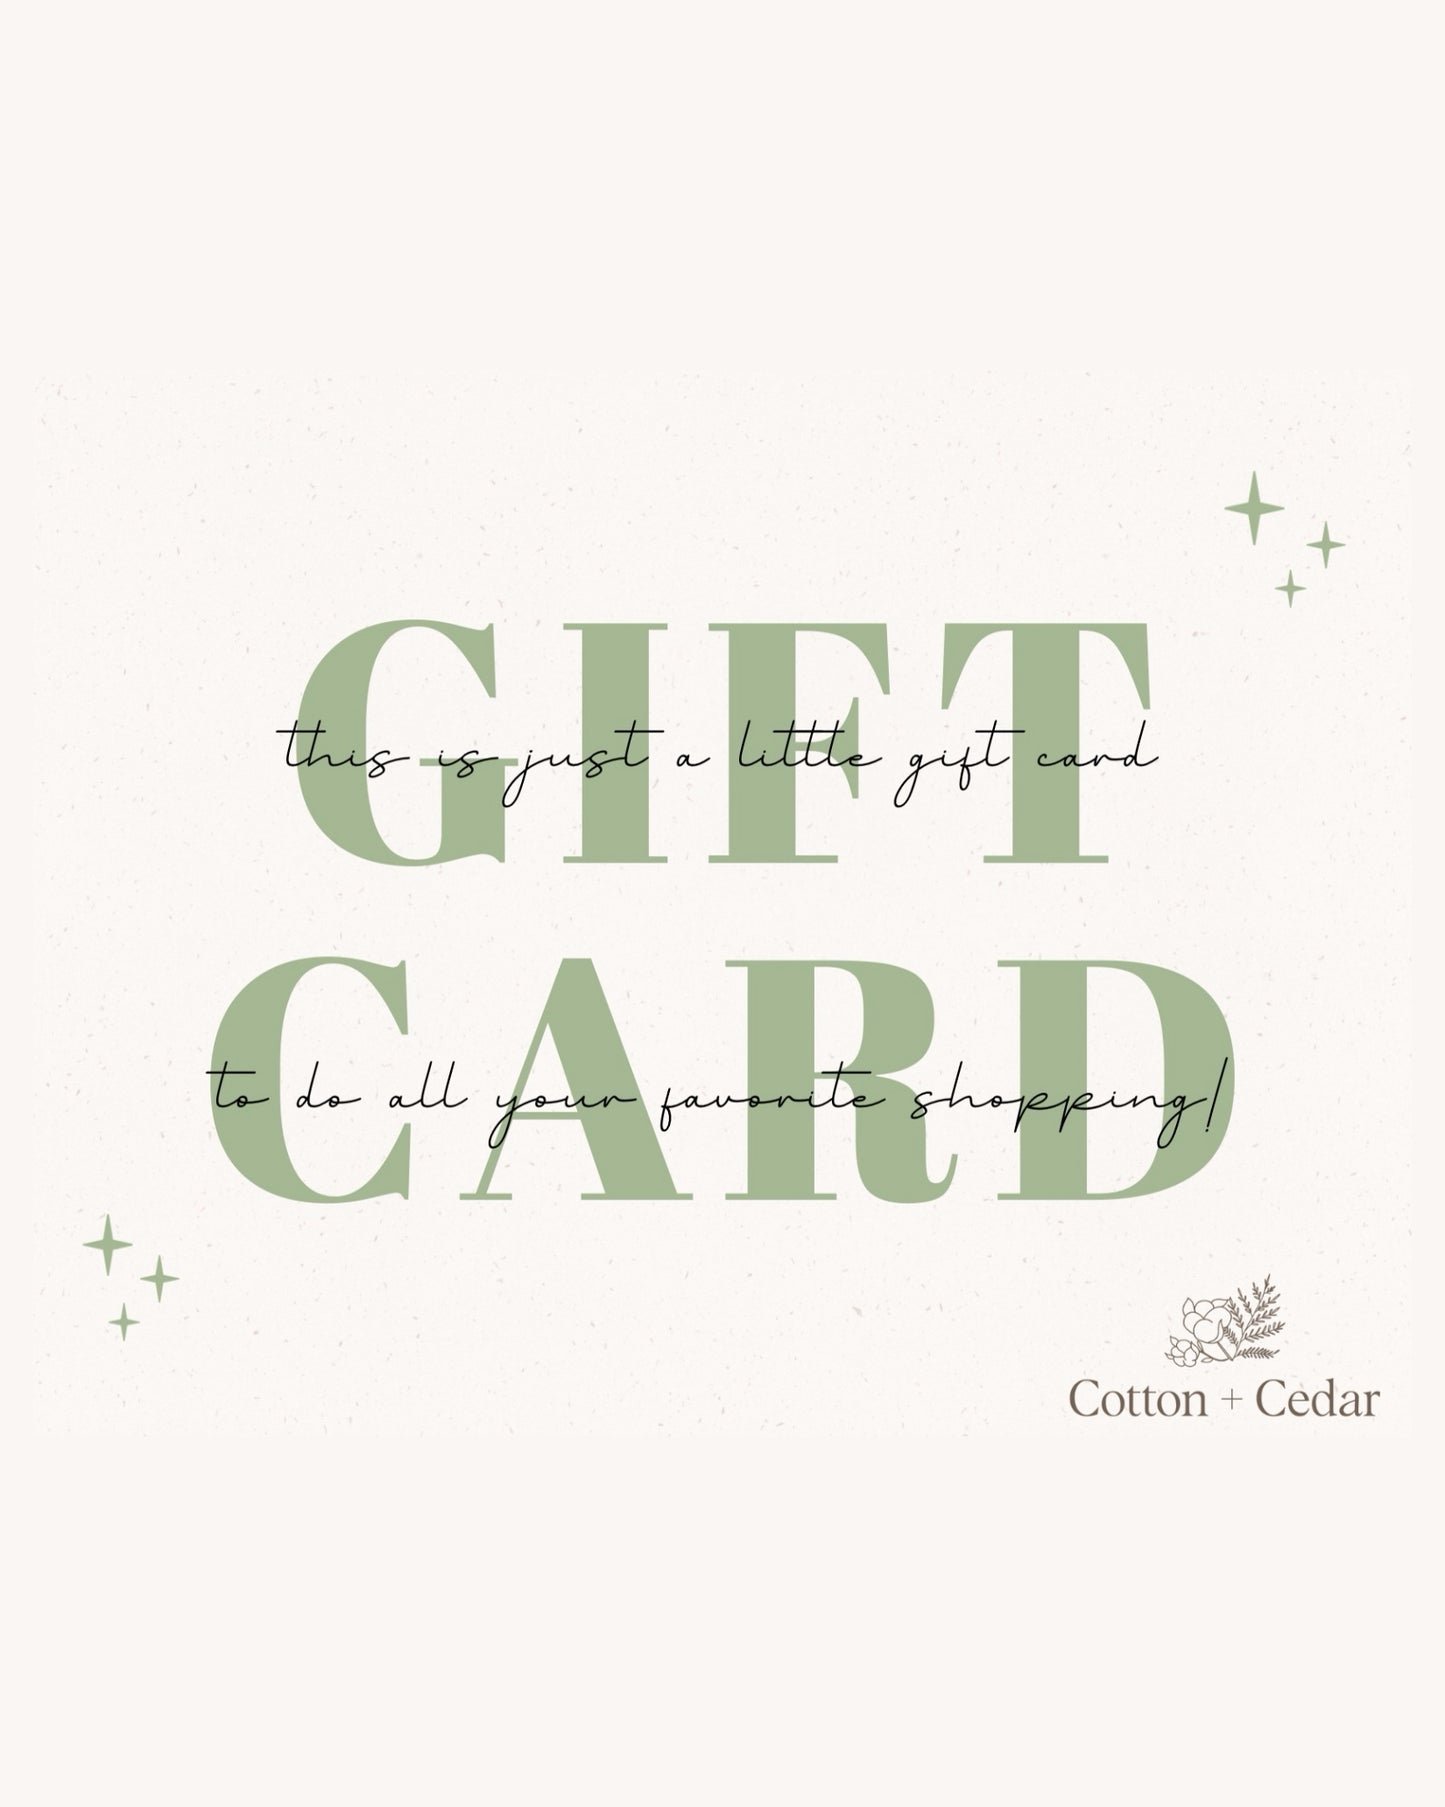 Cotton + Cedar Gift Card